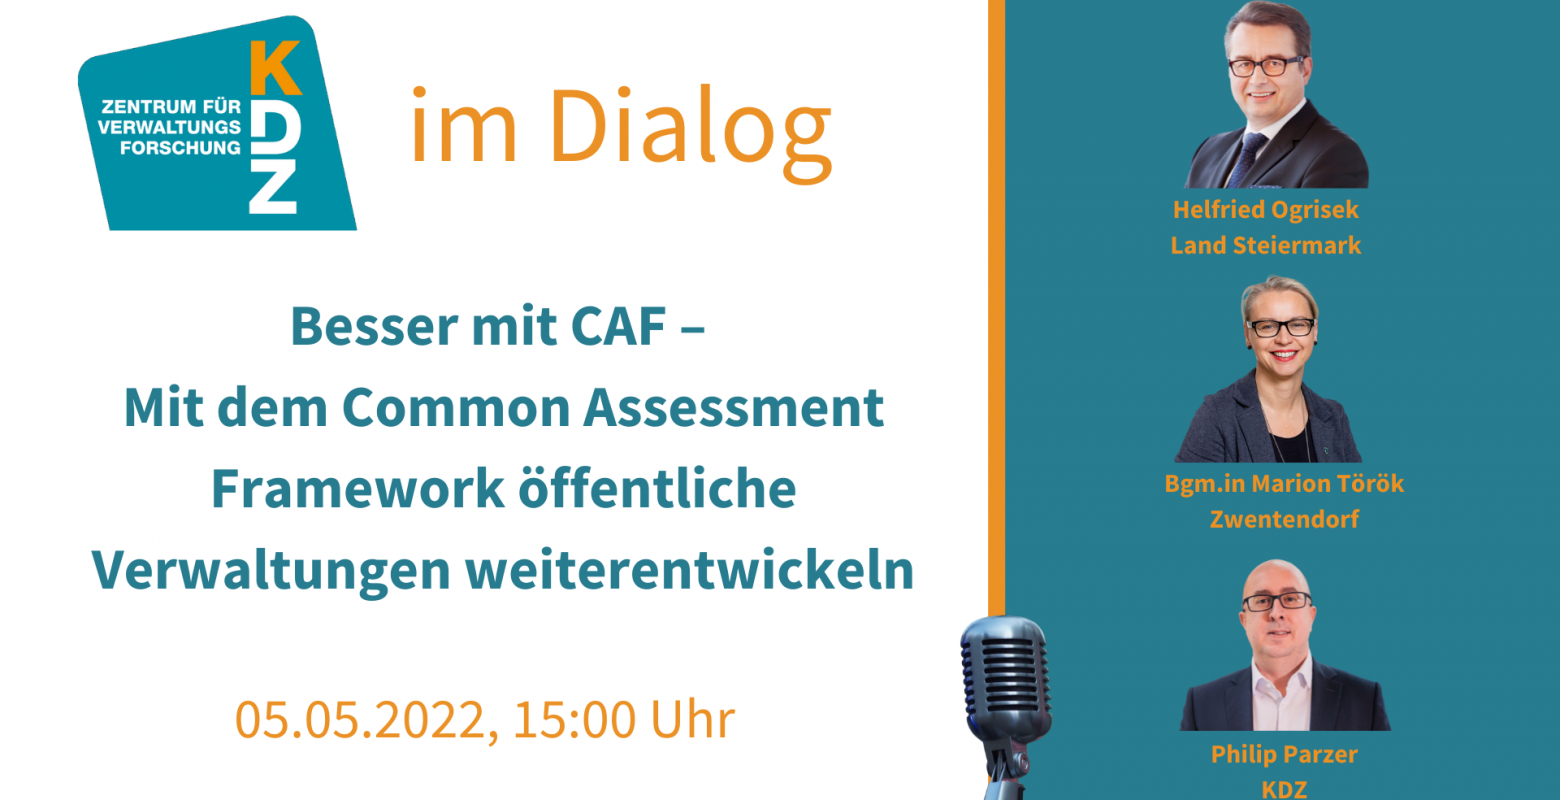 KDZ im Dialog - Besser mit CAF – Mit dem Common Assessment Framework öffentliche Verwaltungen weiterentwickeln